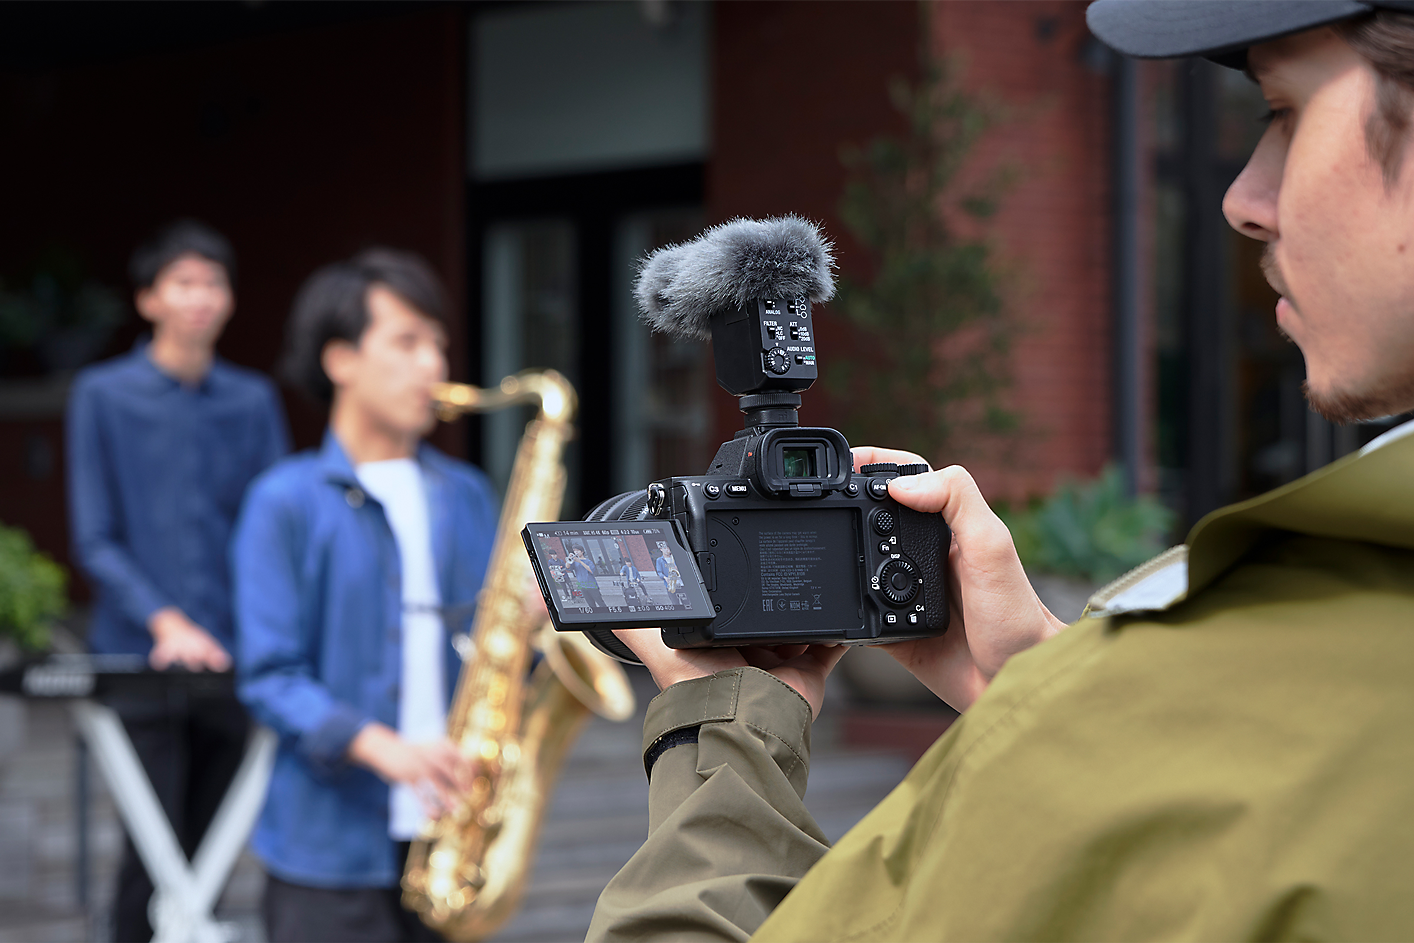 Slika kamermana koji snima muzičare fotoaparatom na koji je pričvršćen ECM-B10 podešen na jednosmerni režim.